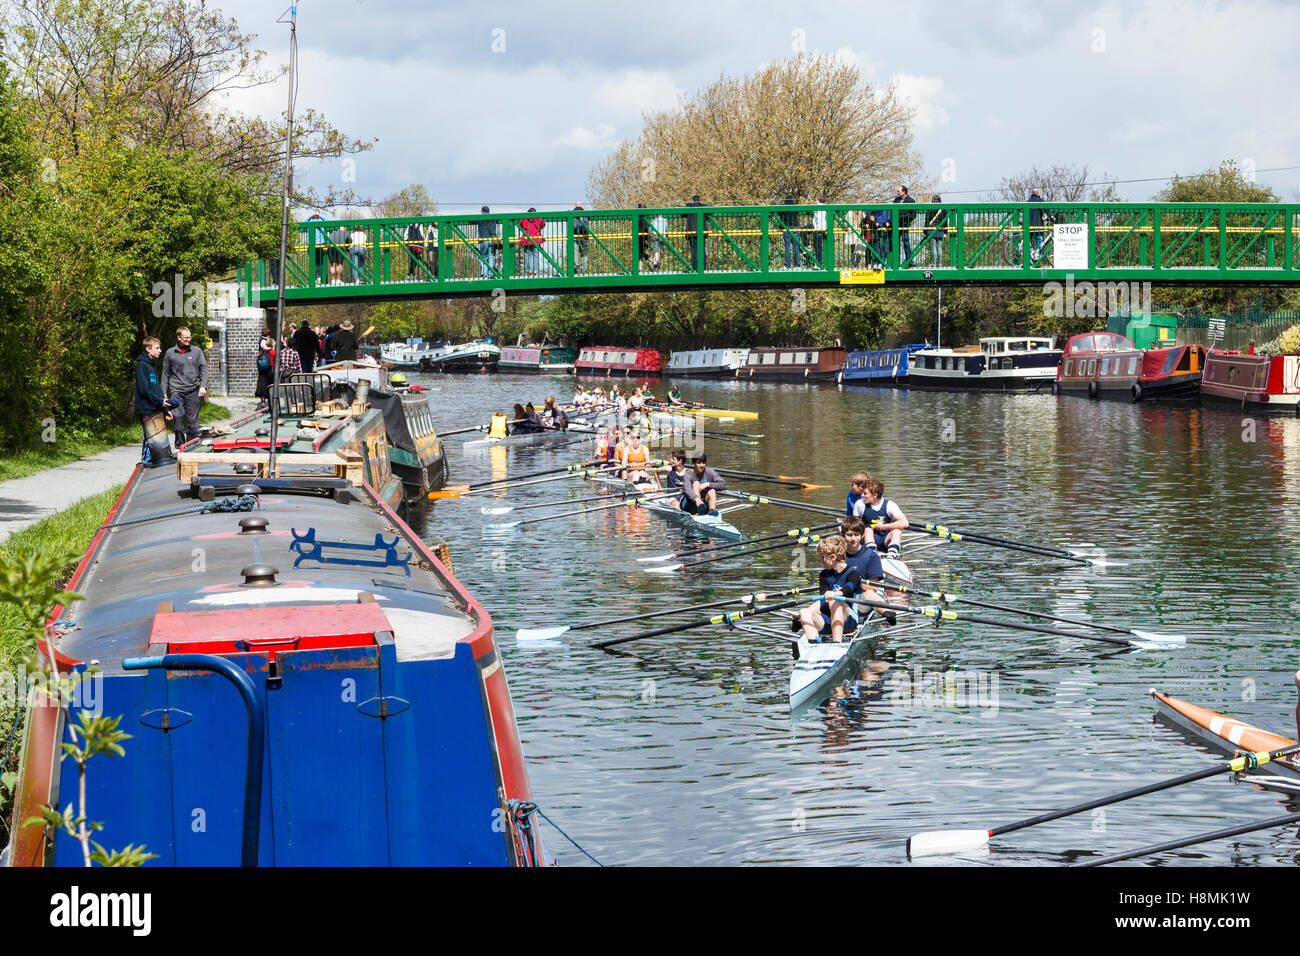 Doppio skiff sul fiume Lea a Springfield Marina durante una competizione di canottaggio a Lea Rowing Club, London, Regno Unito Foto Stock